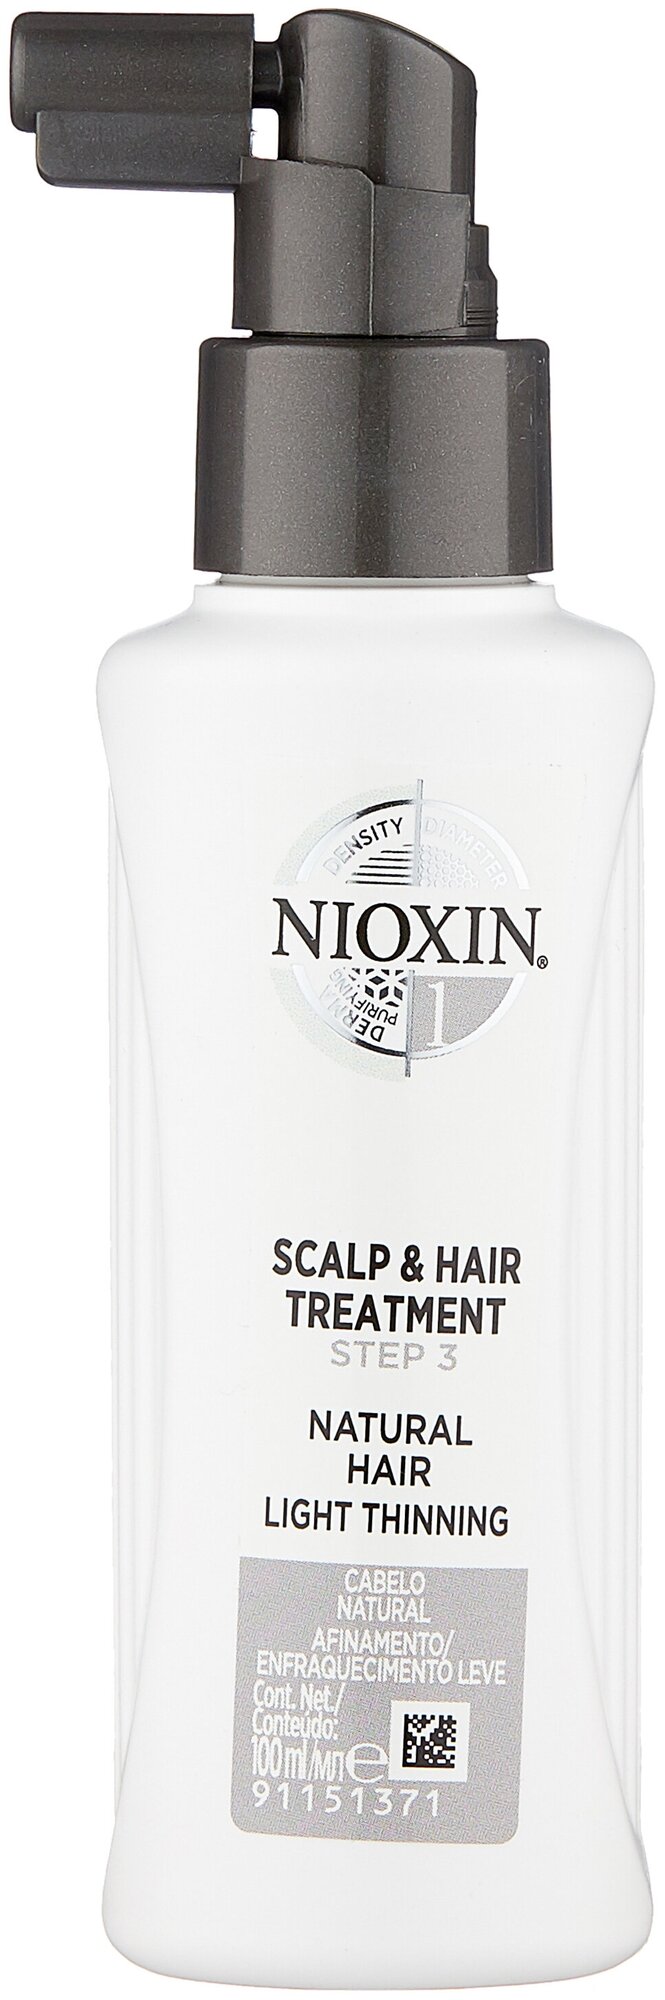 Nioxin System 1 Питательная маска для кожи головы, 100 мл, бутылка